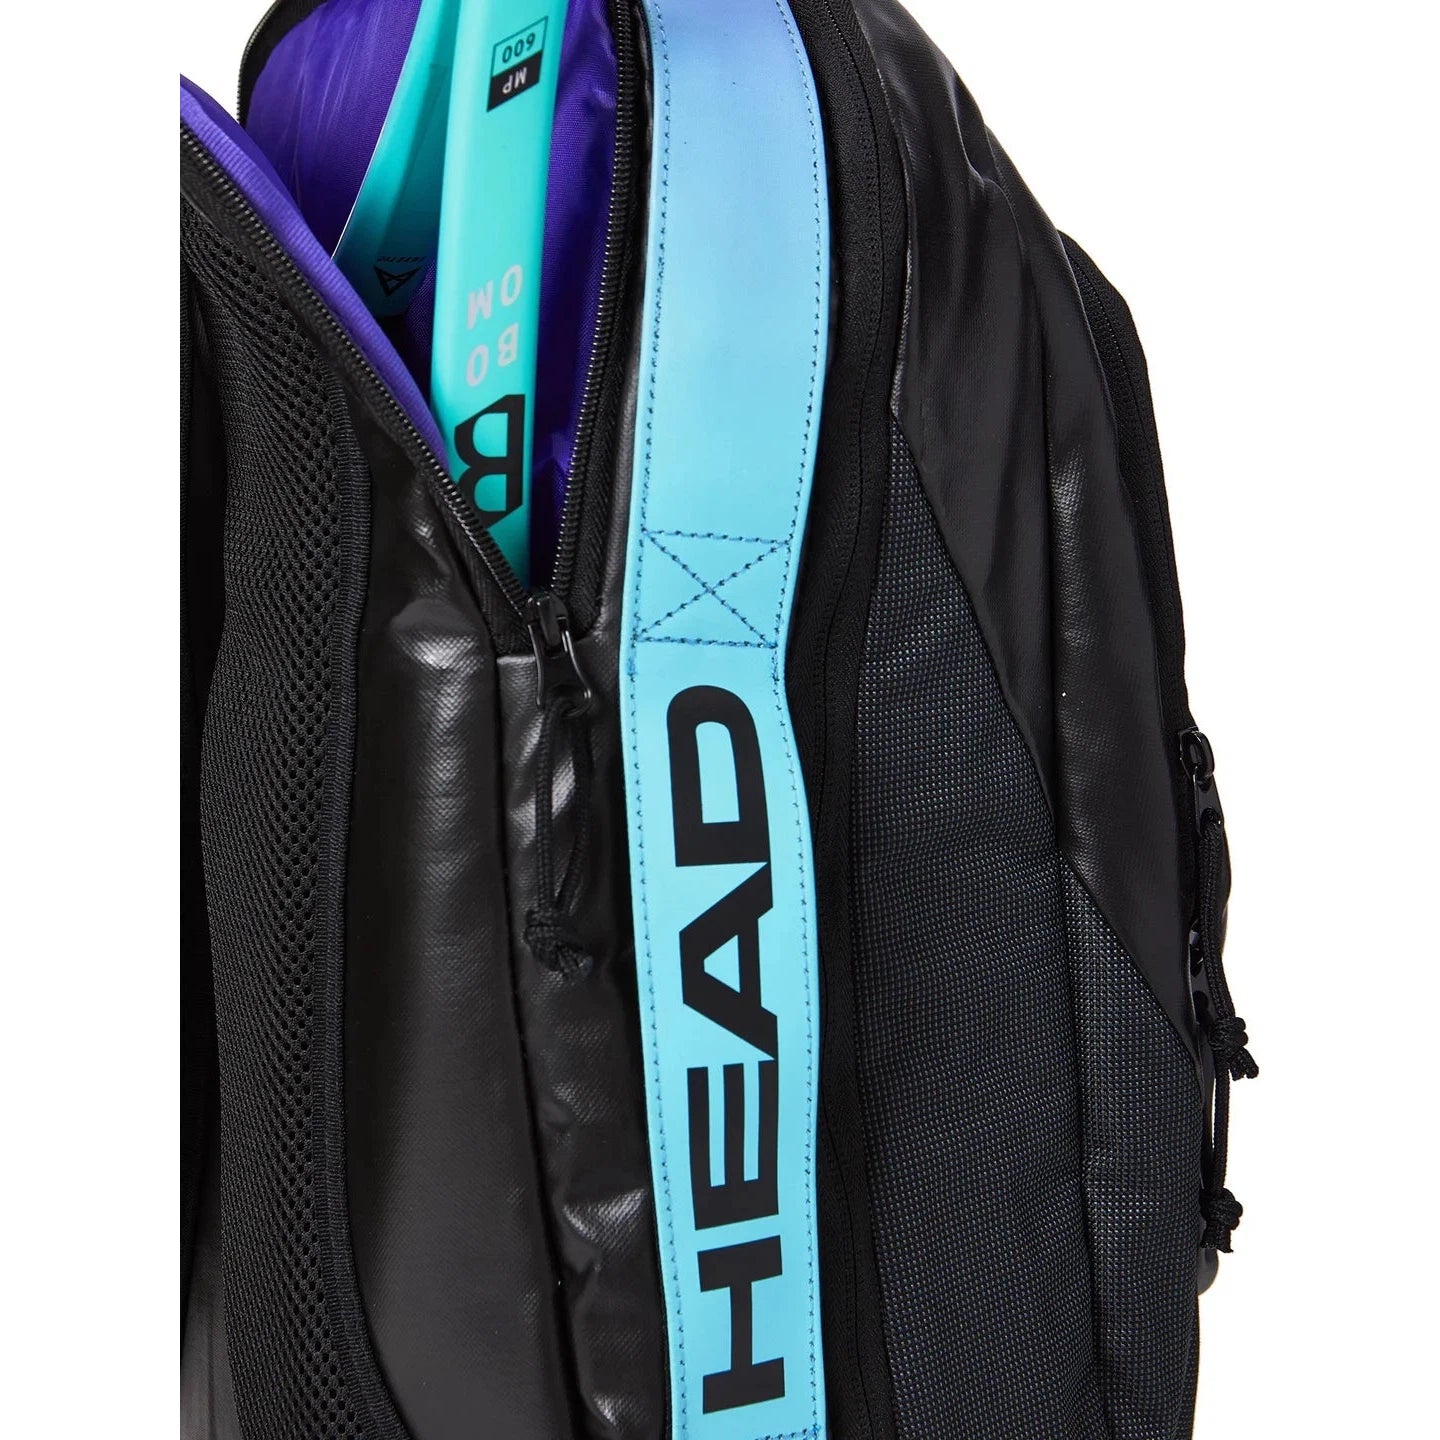 Head Gravity R-Pet Tennis Backpack